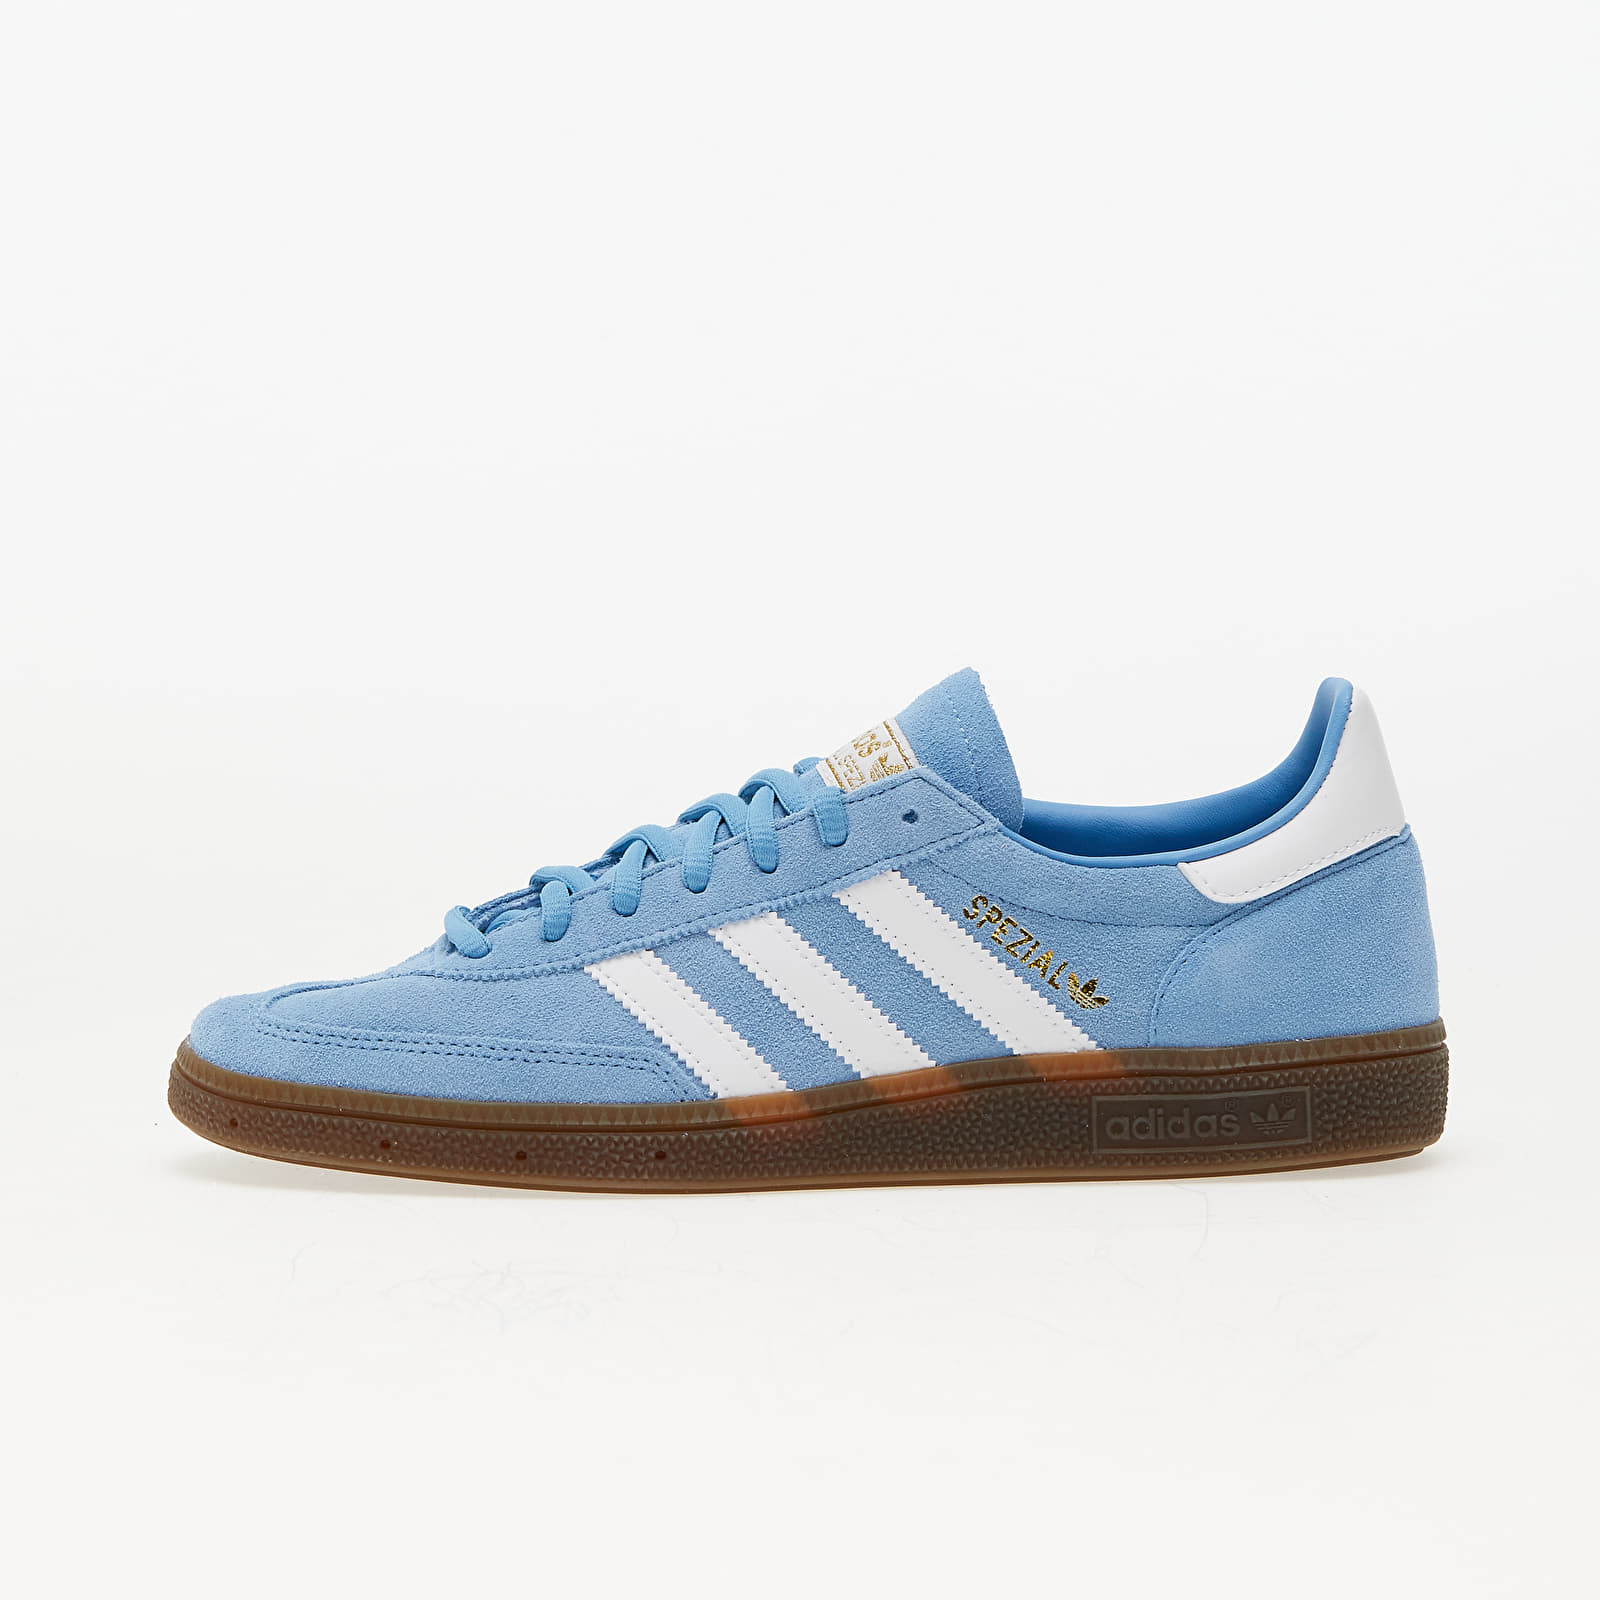 Men's shoes adidas Spezial Handball Light blue/ Ftw White/ Gum5